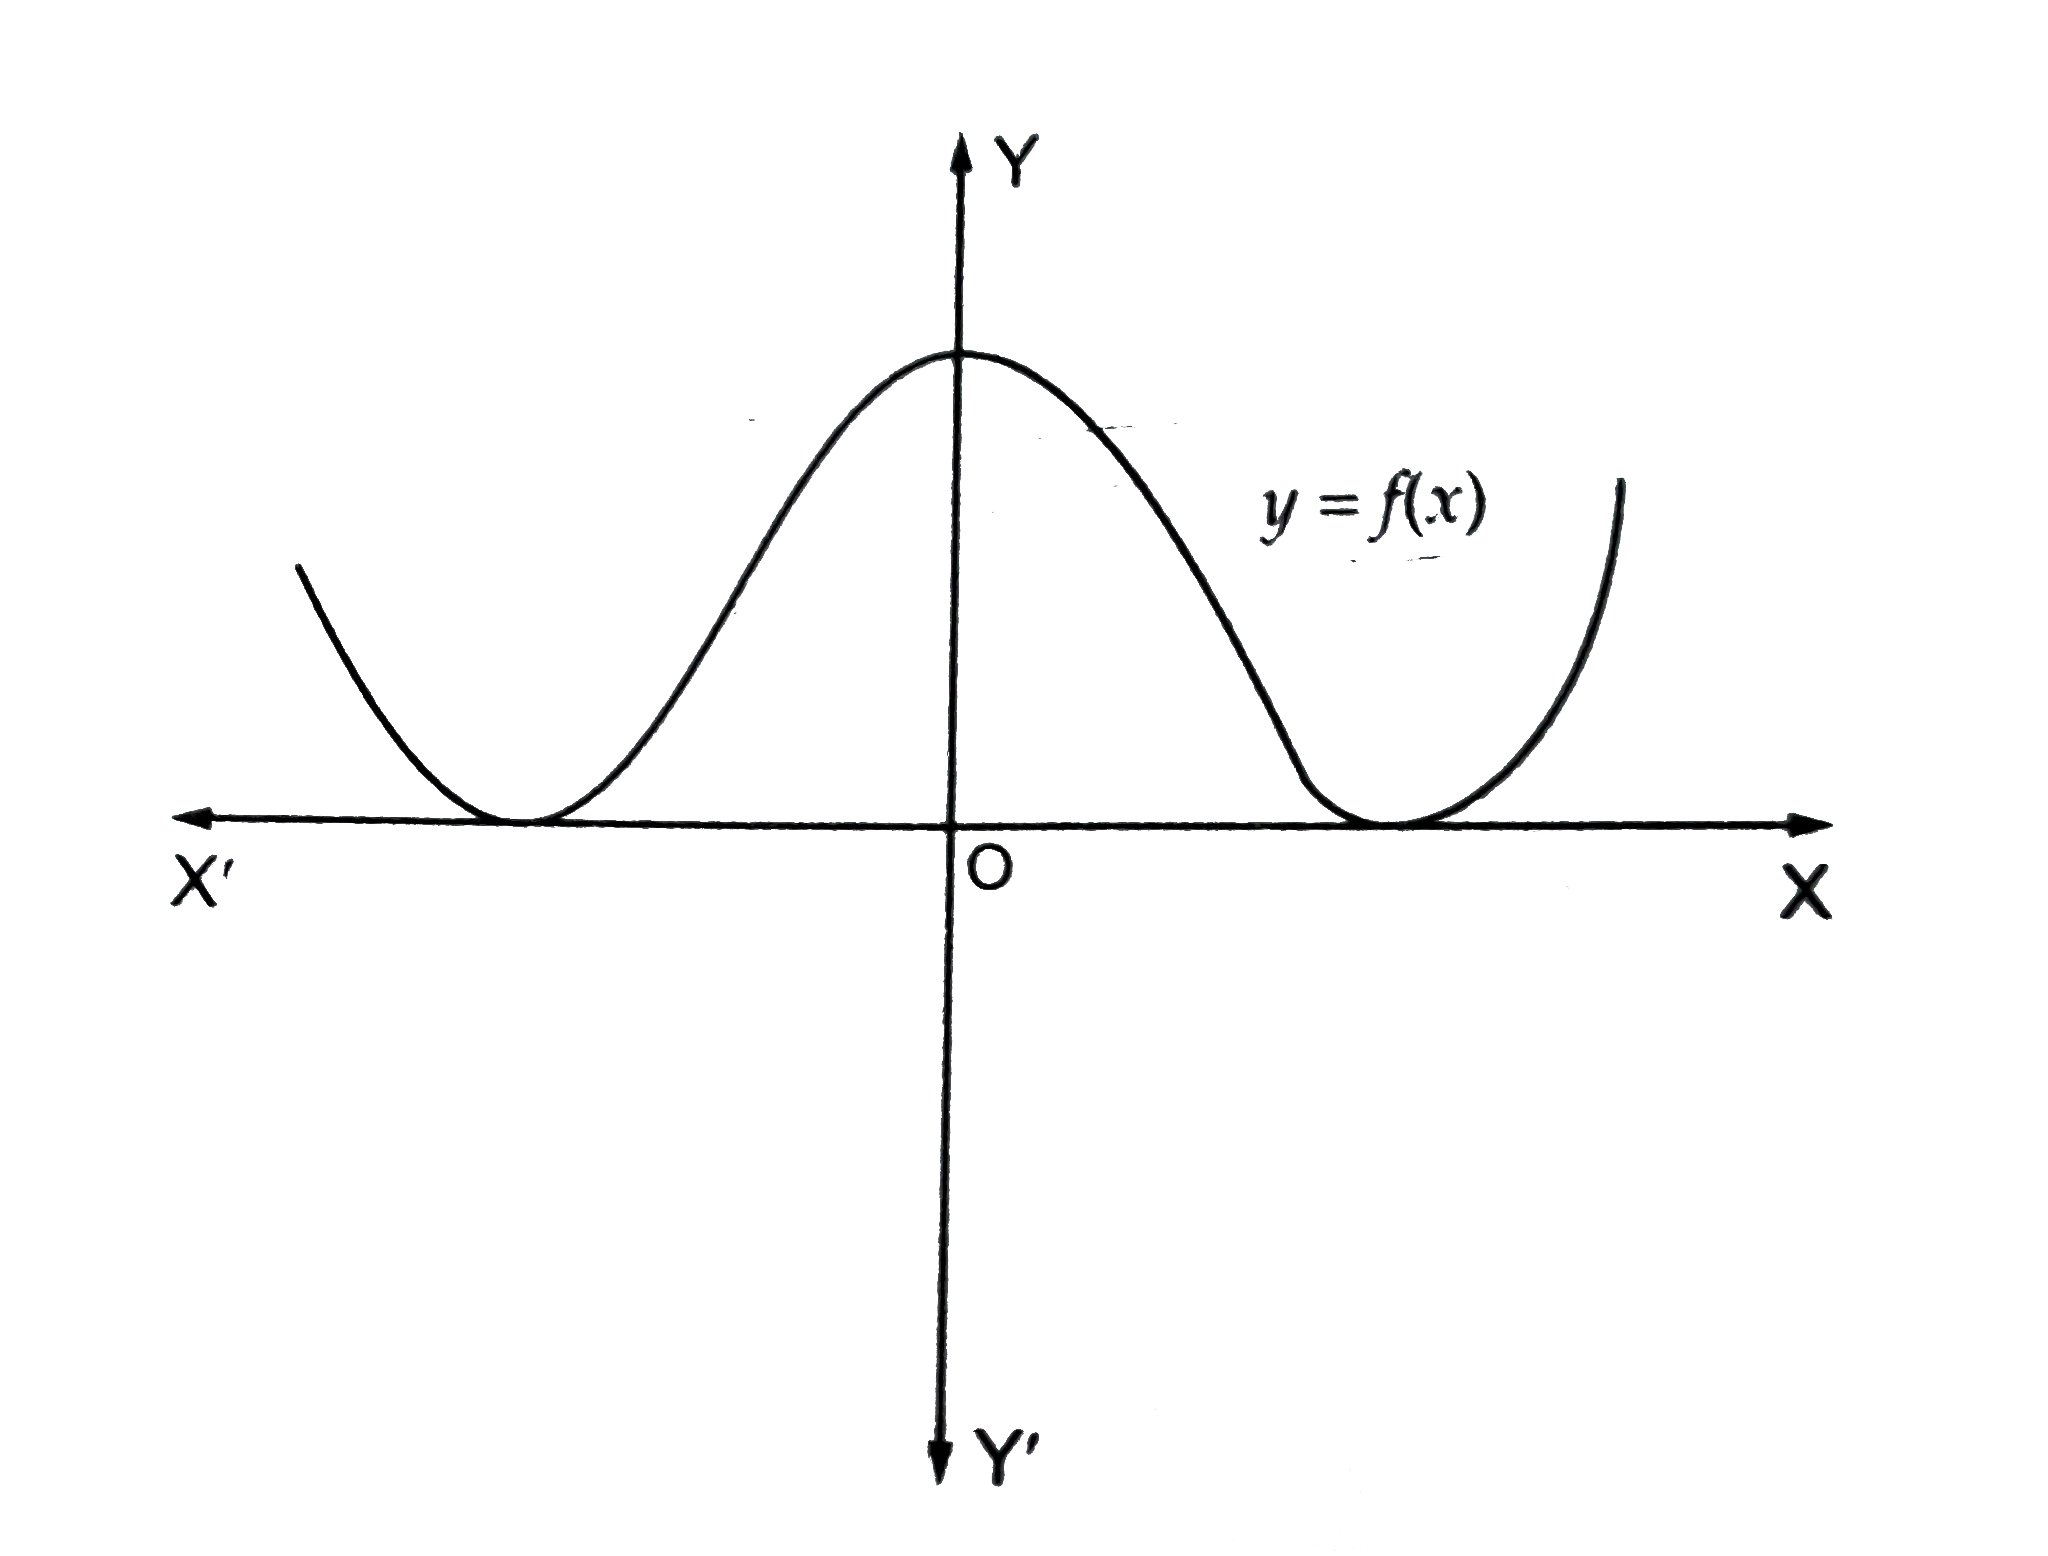 एक   बहुपद    f  ( x )   का   आलेख  चित्र  में  दर्शाया  गया है  |    बहुपद     f  (x)    के वास्तविक  शुन्यकों की  संख्या लिखिए |